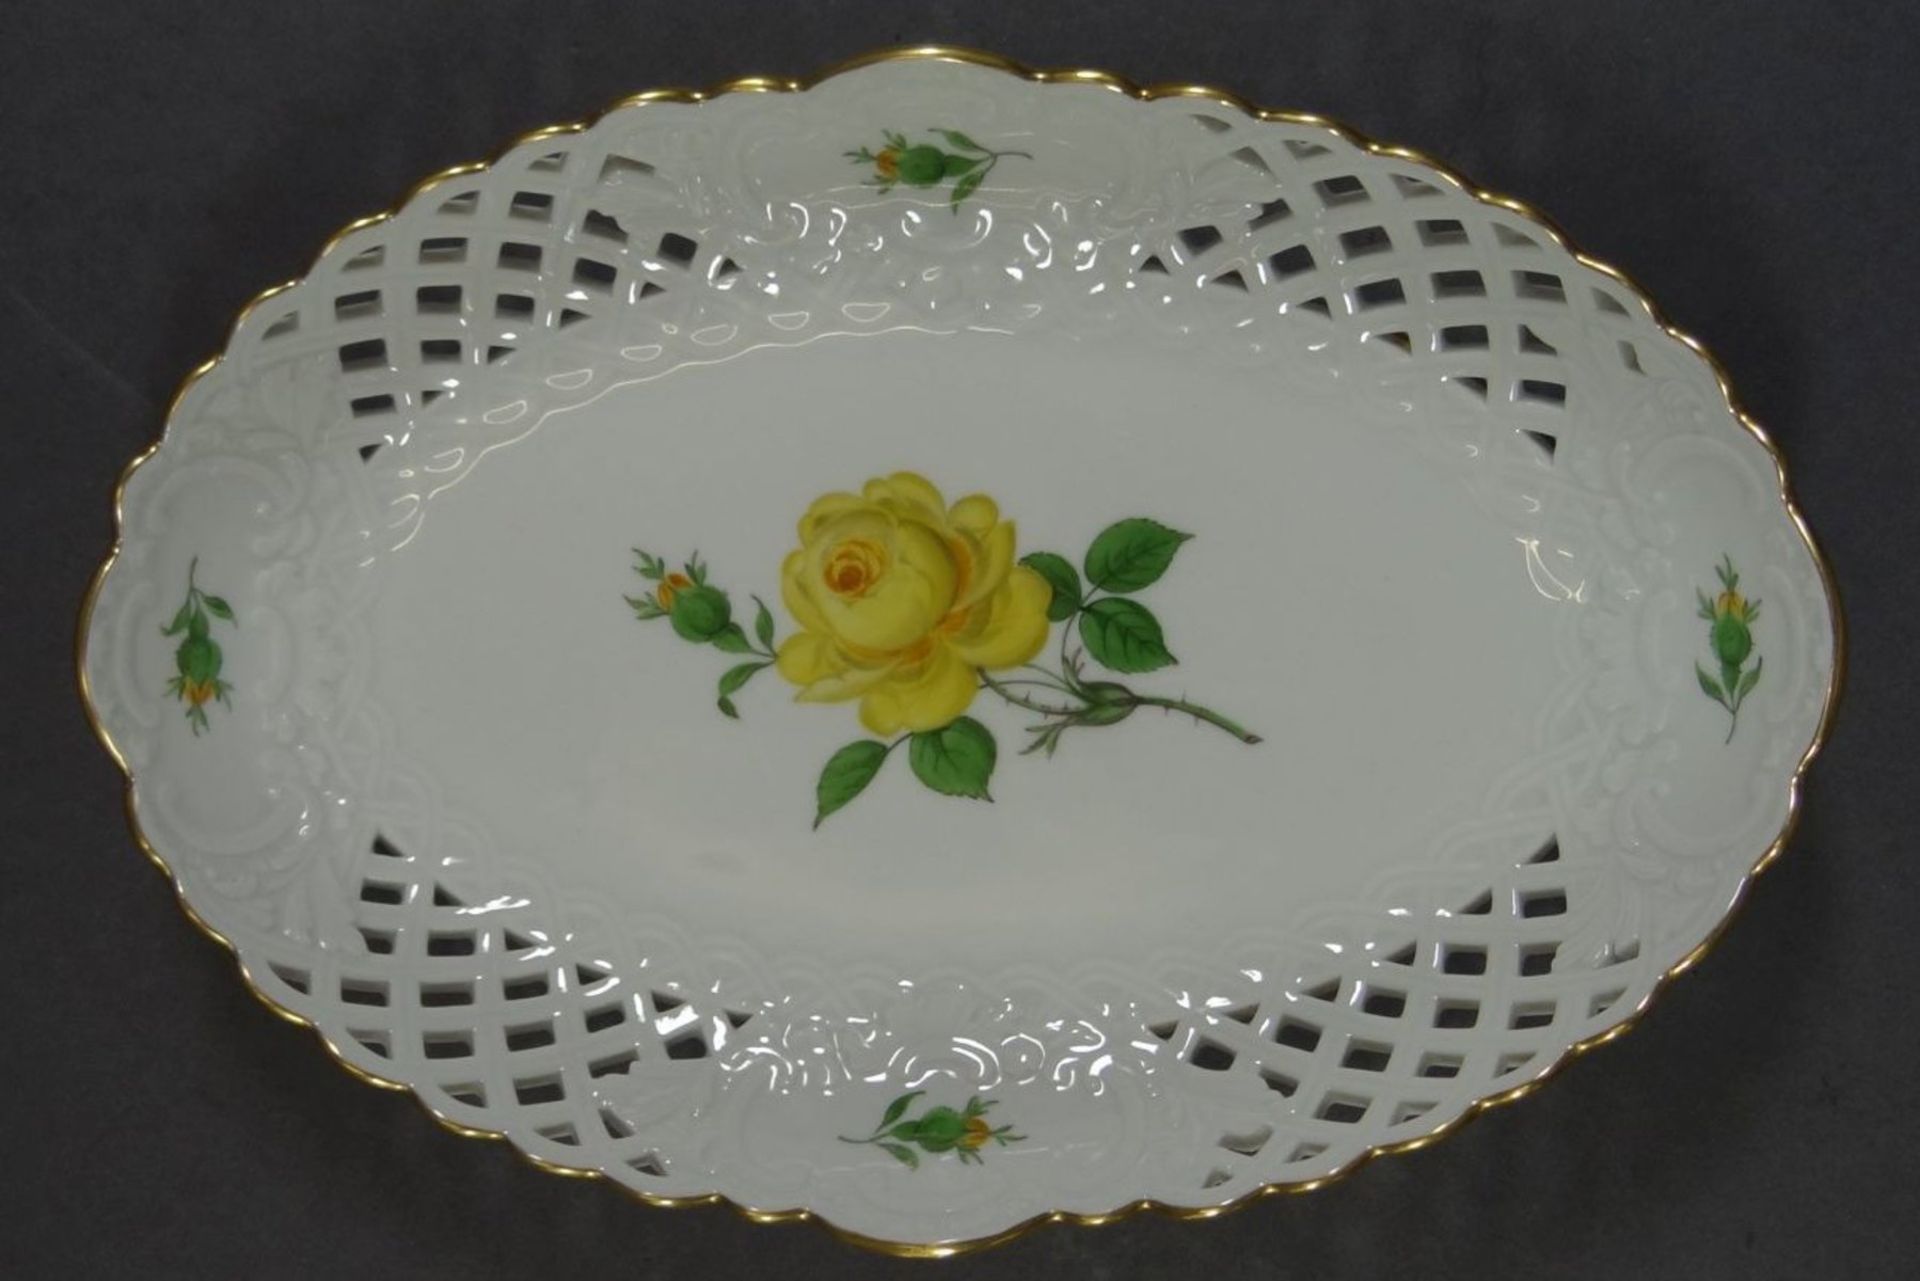 ovale Schale mit Durchbruchrand "Meissen", gelbe Rose, 1.Wahl, H-3,5 cm, 22,5x15,5 cm - Bild 3 aus 7